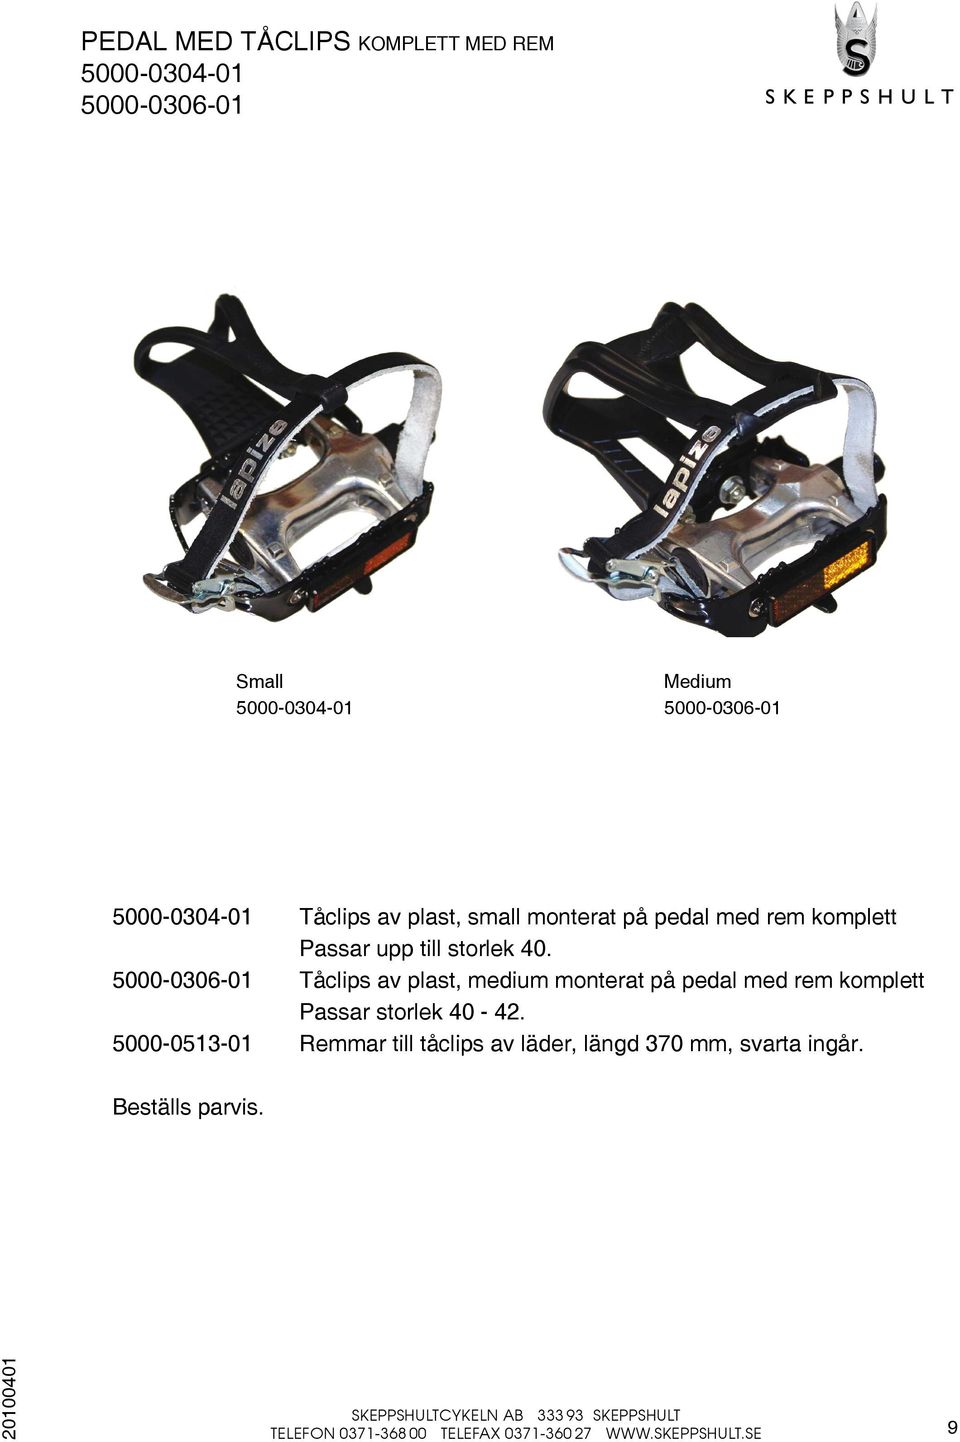 5000-0306-01 Tåclips av plast, medium monterat på pedal med rem komplett Passar storlek 40-42.